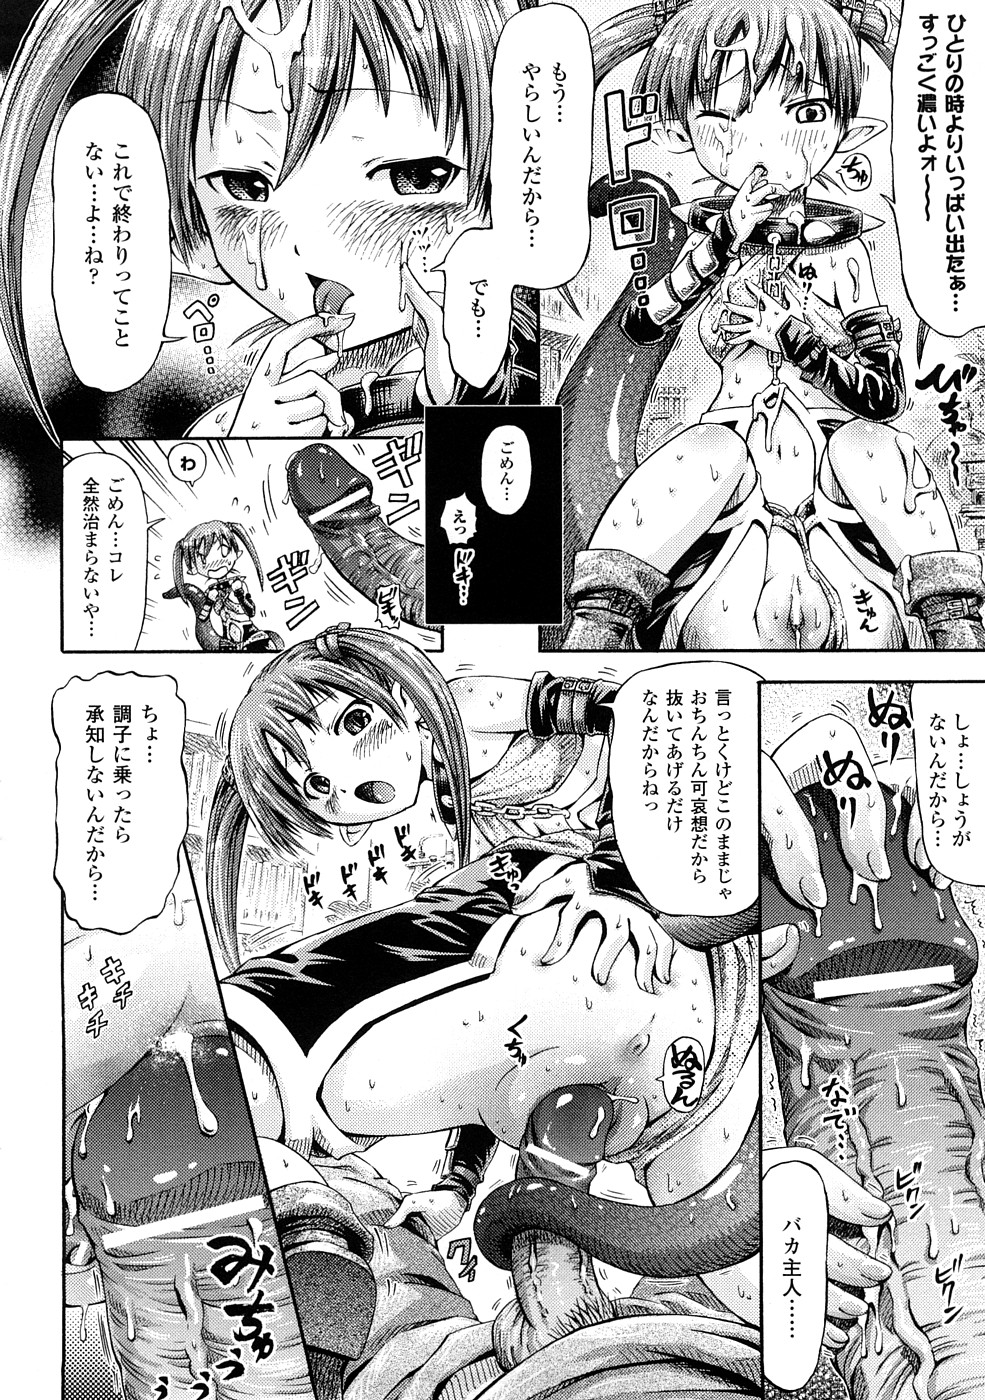 [Horitomo] Fairy Tales page 39 full